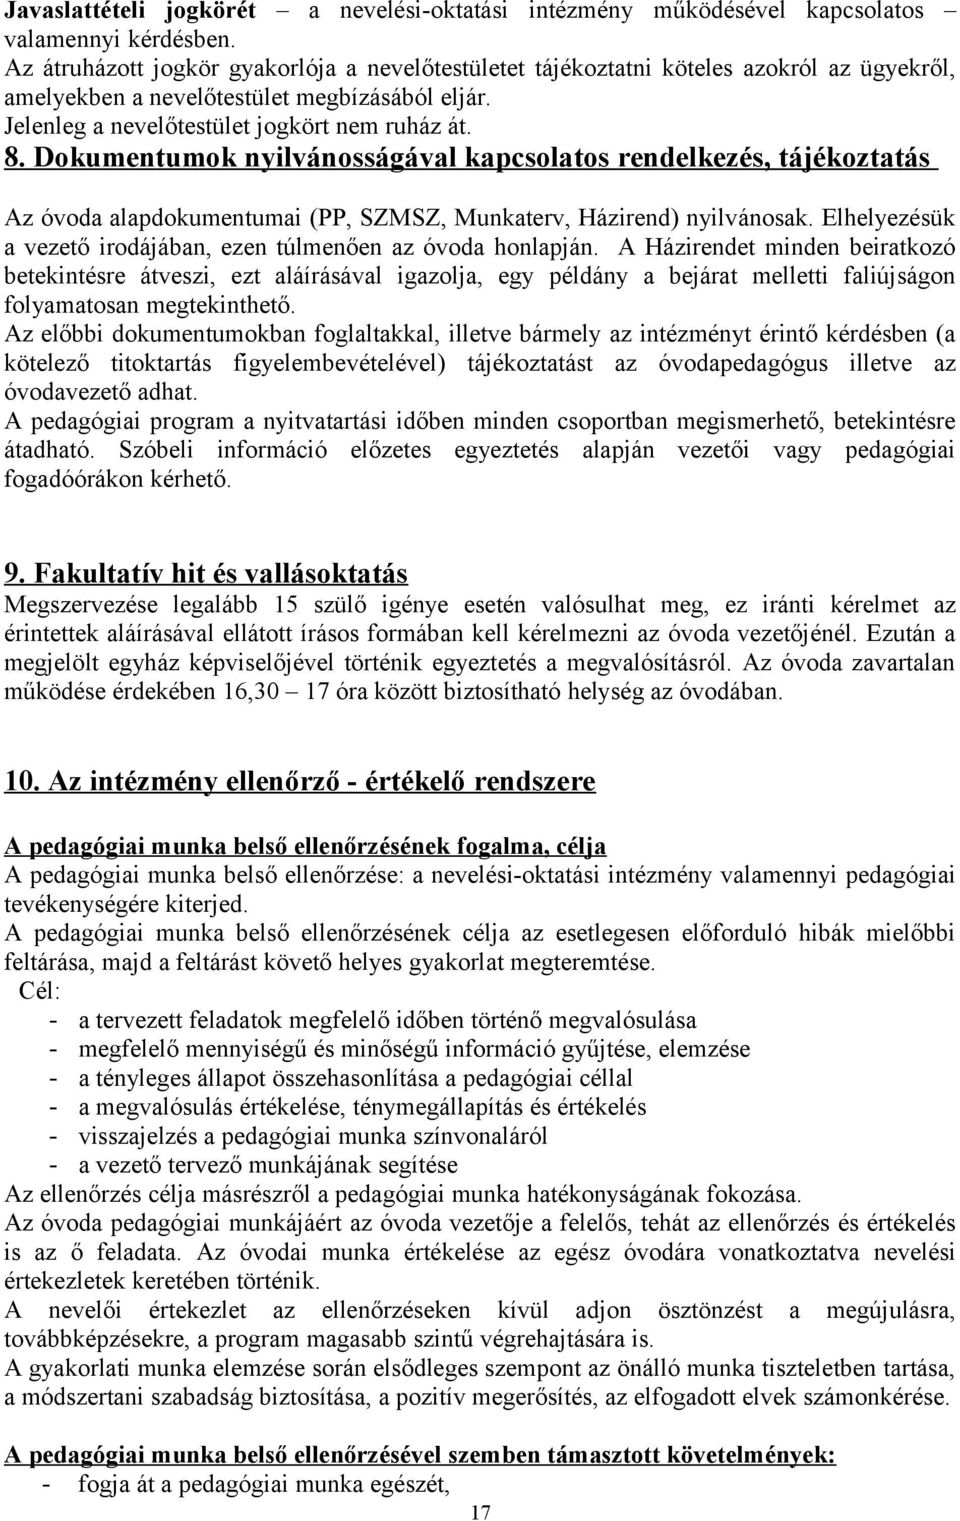 Dokumentumok nyilvánosságával kapcsolatos rendelkezés, tájékoztatás Az óvoda alapdokumentumai (PP, SZMSZ, Munkaterv, Házirend) nyilvánosak.